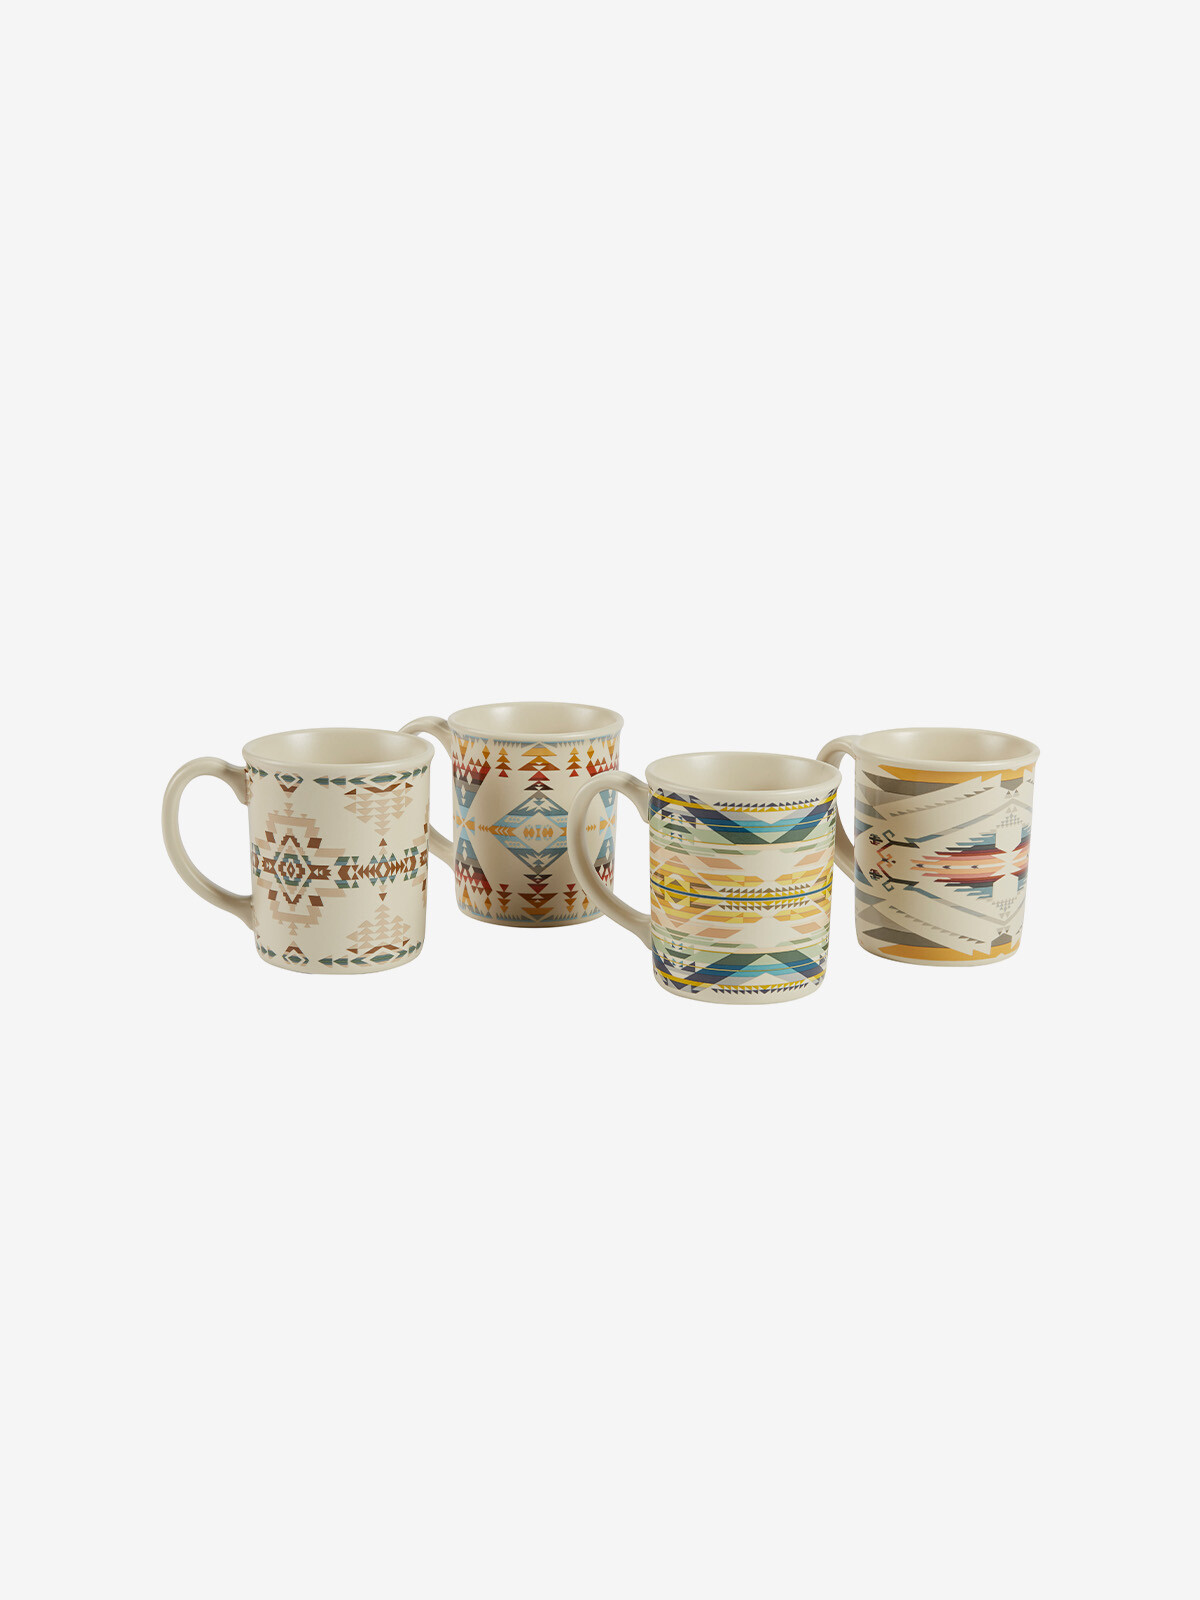 12 oz ceramic mug set ESTAMPADO